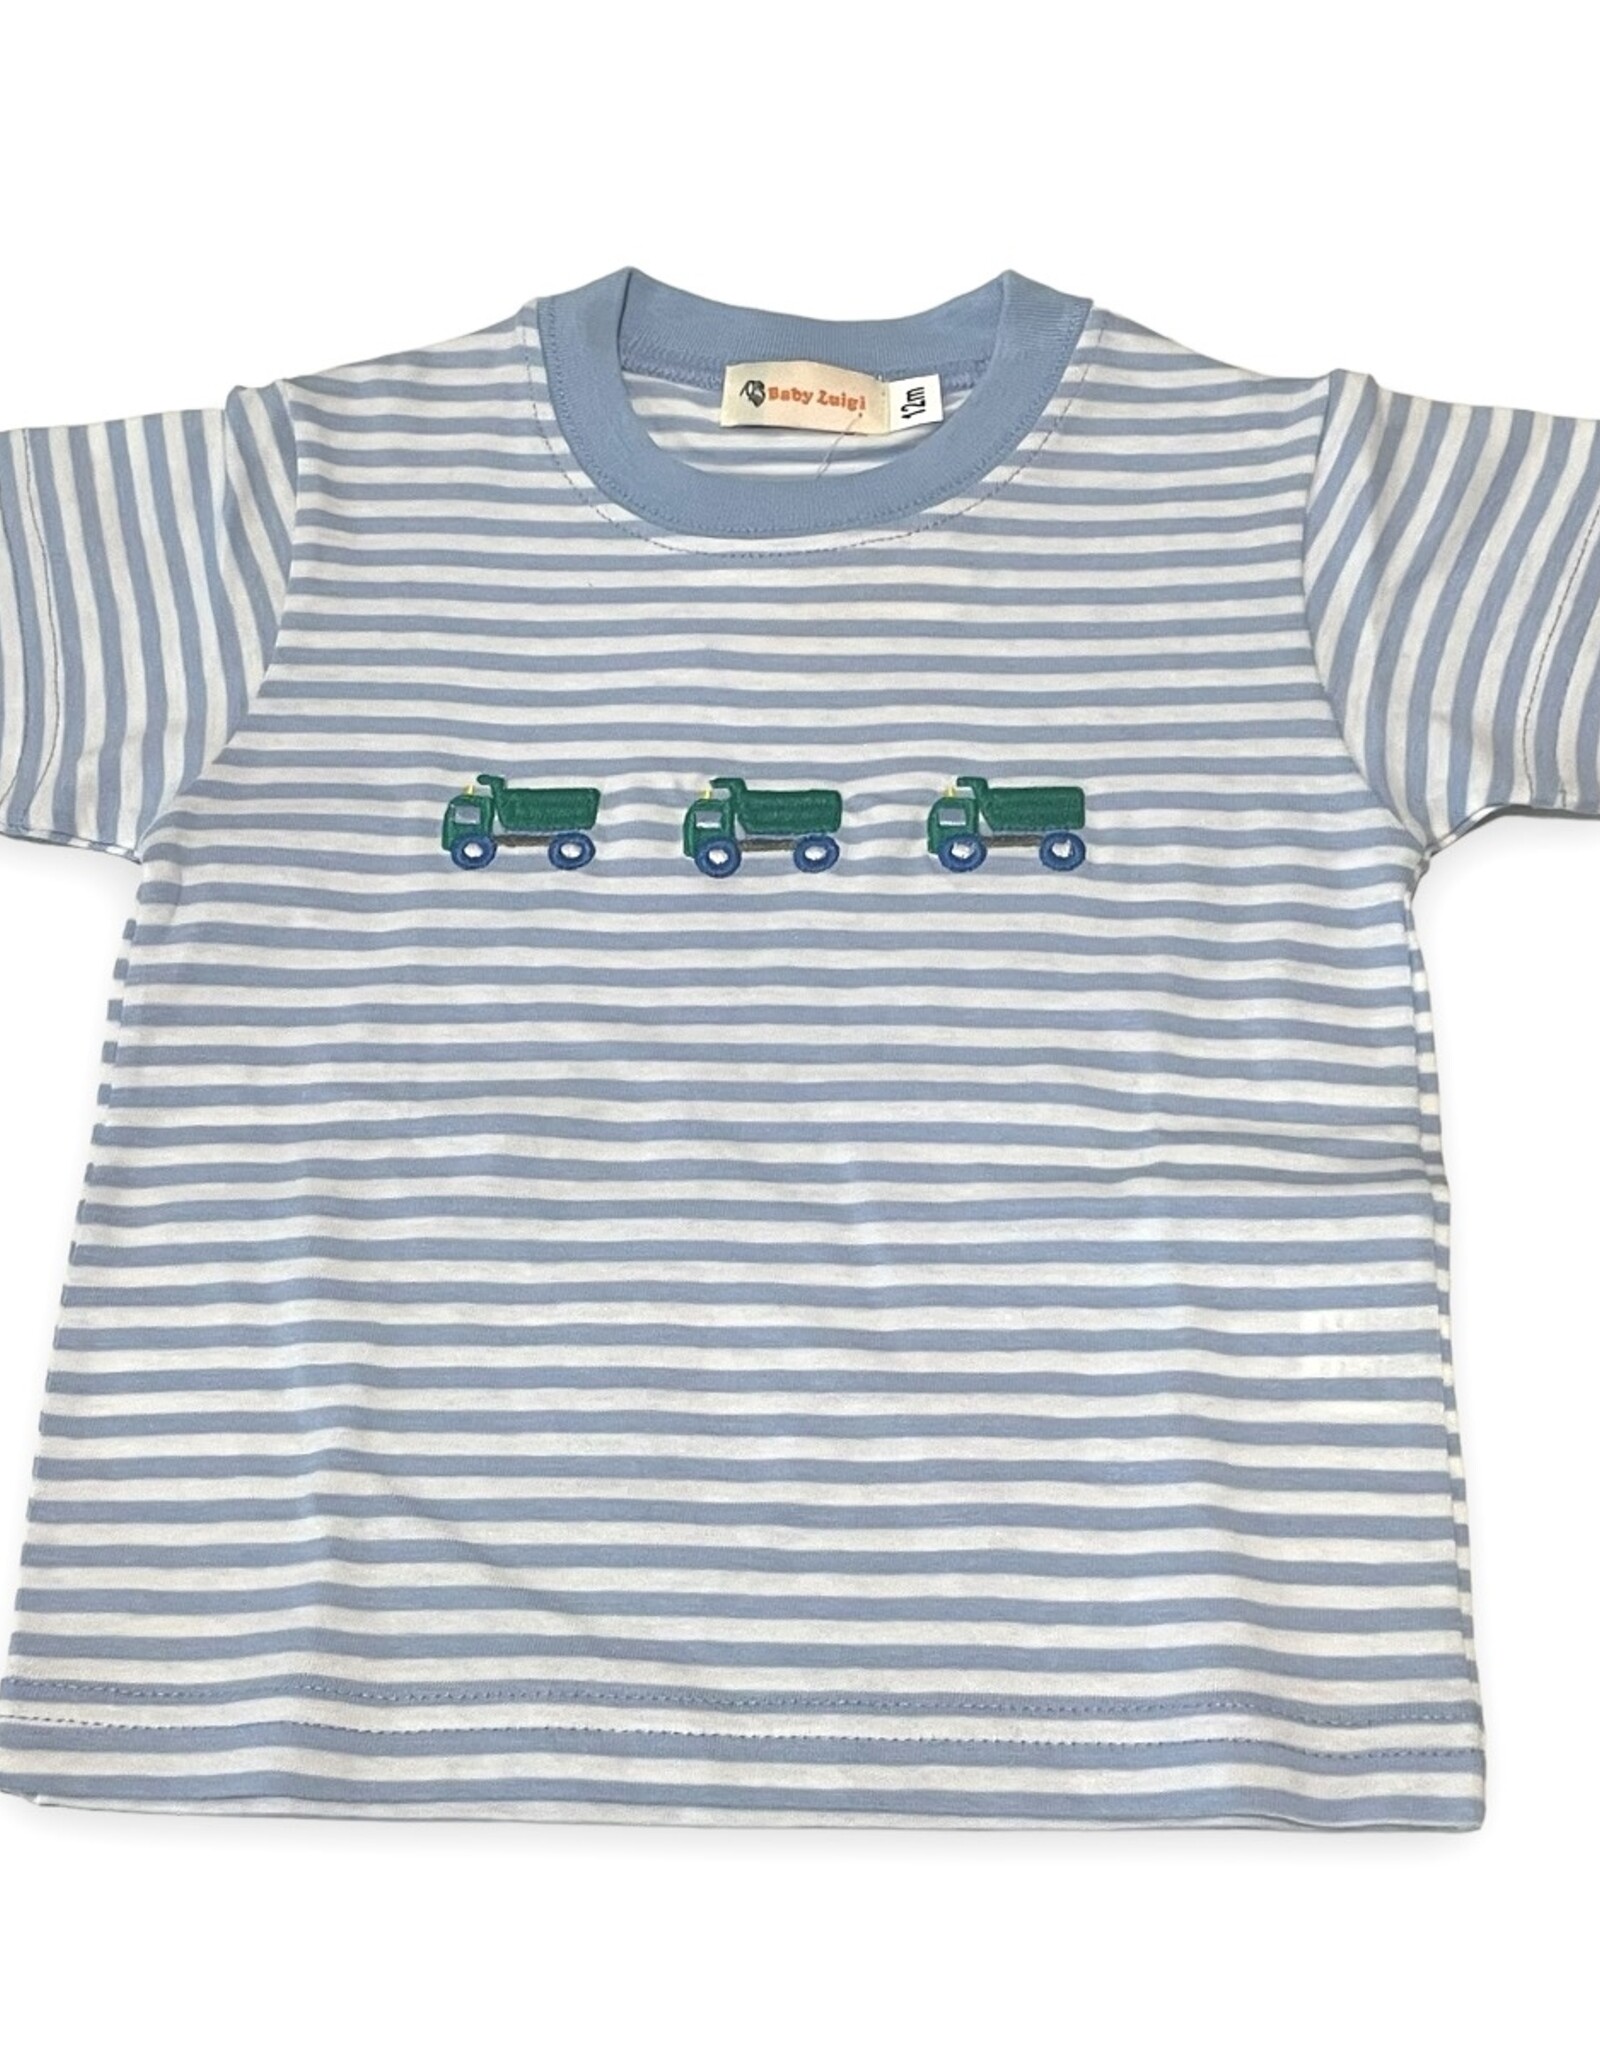 Luigi Kids Boys S/S t-shirt 3 Dump Trucks